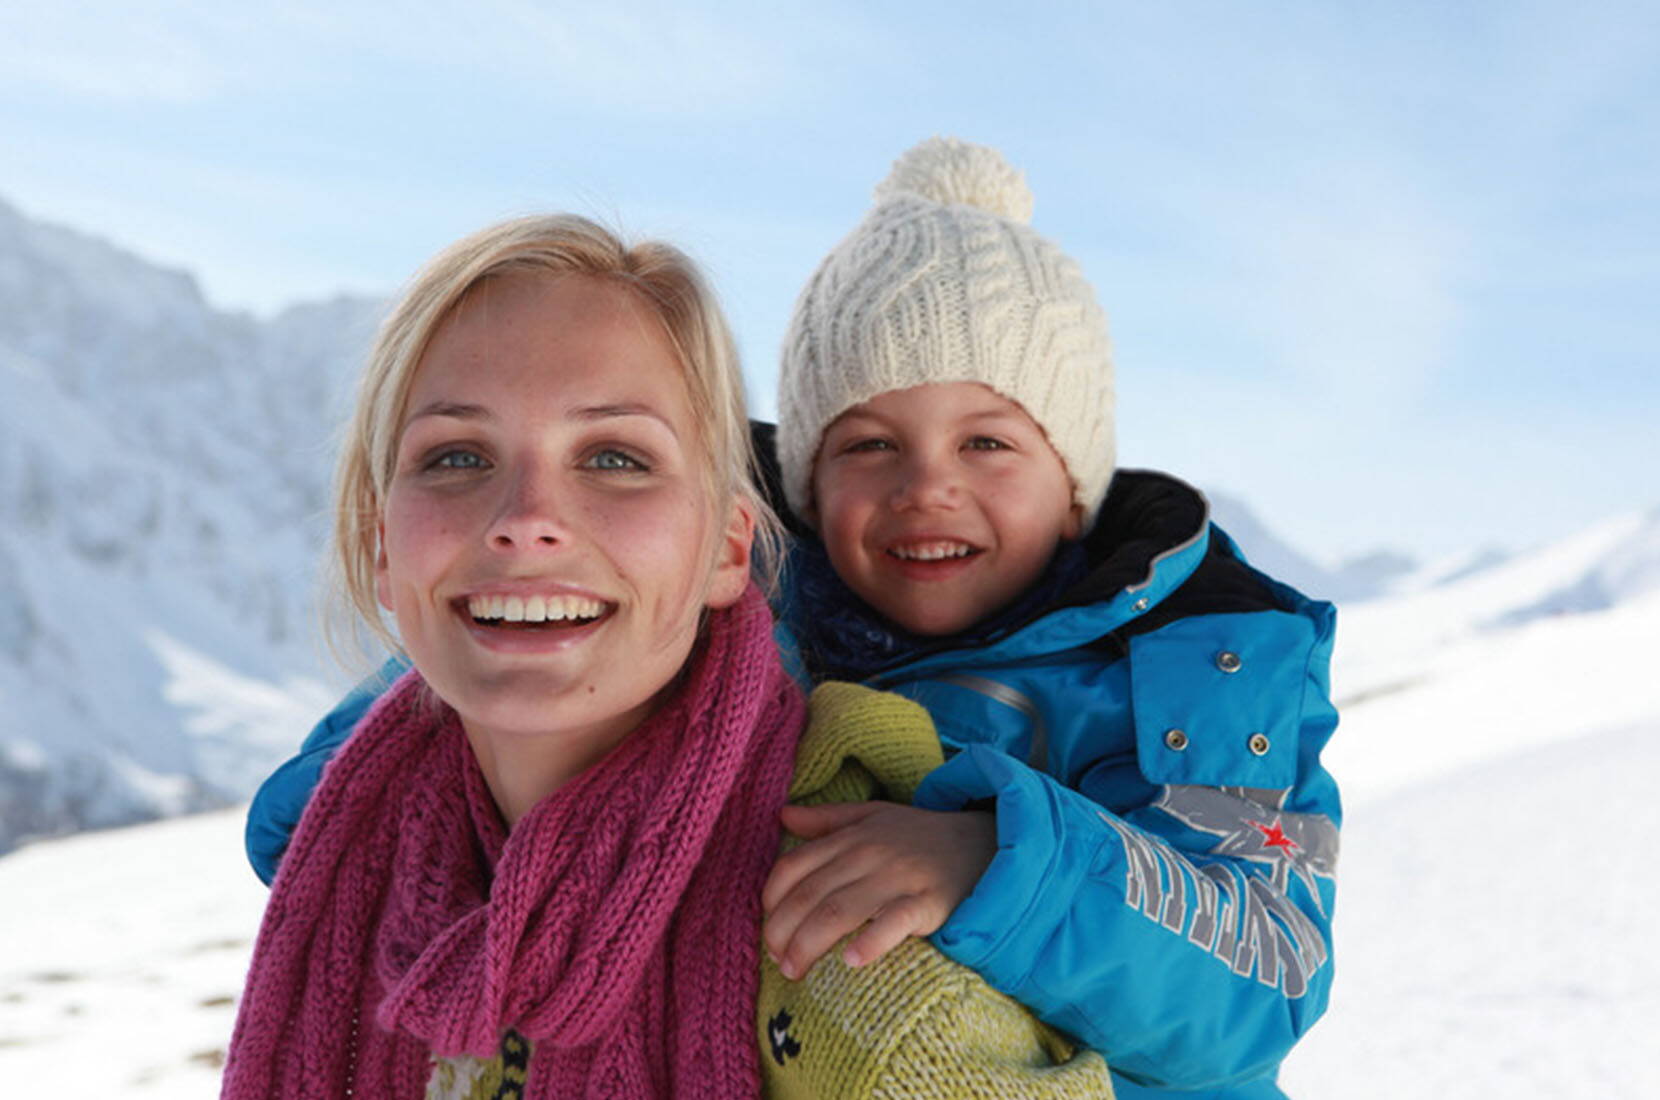 Excursion en famille à Savognin. Avec beaucoup de neige naturelle et des pistes rouges et bleues extra larges, le domaine skiable baigné de soleil offre un plaisir de glisse particulier - ce n'est pas pour rien que les pistes de Savognin comptent parmi les plus belles de tout l'espace alpin.